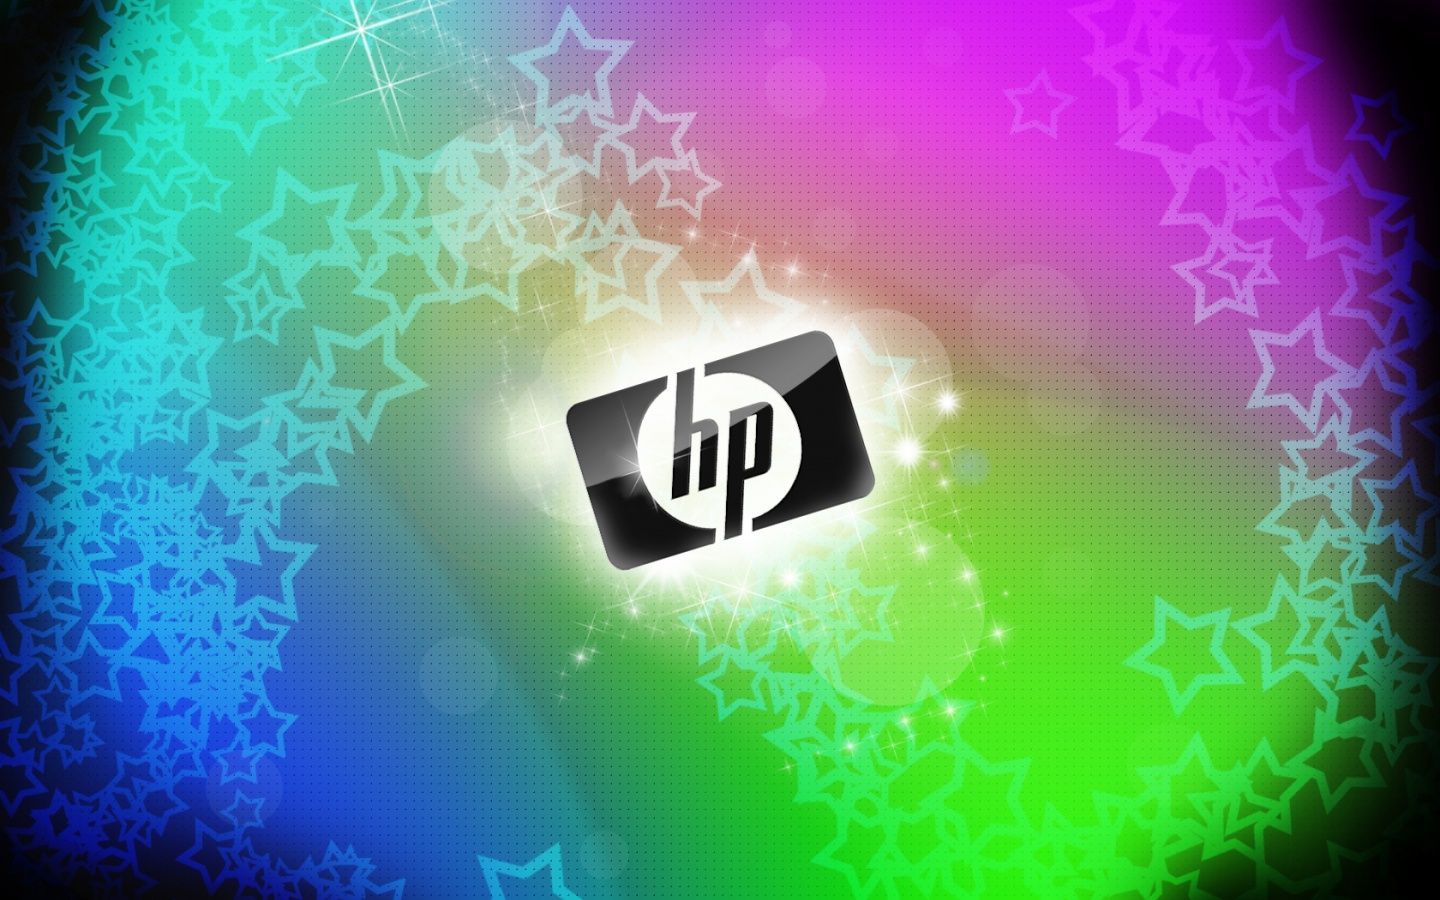 3D HP Wallpaper. Unicorn wallpaper, 3D desktop wallpaper, Laptop wallpaper desktop wallpaper